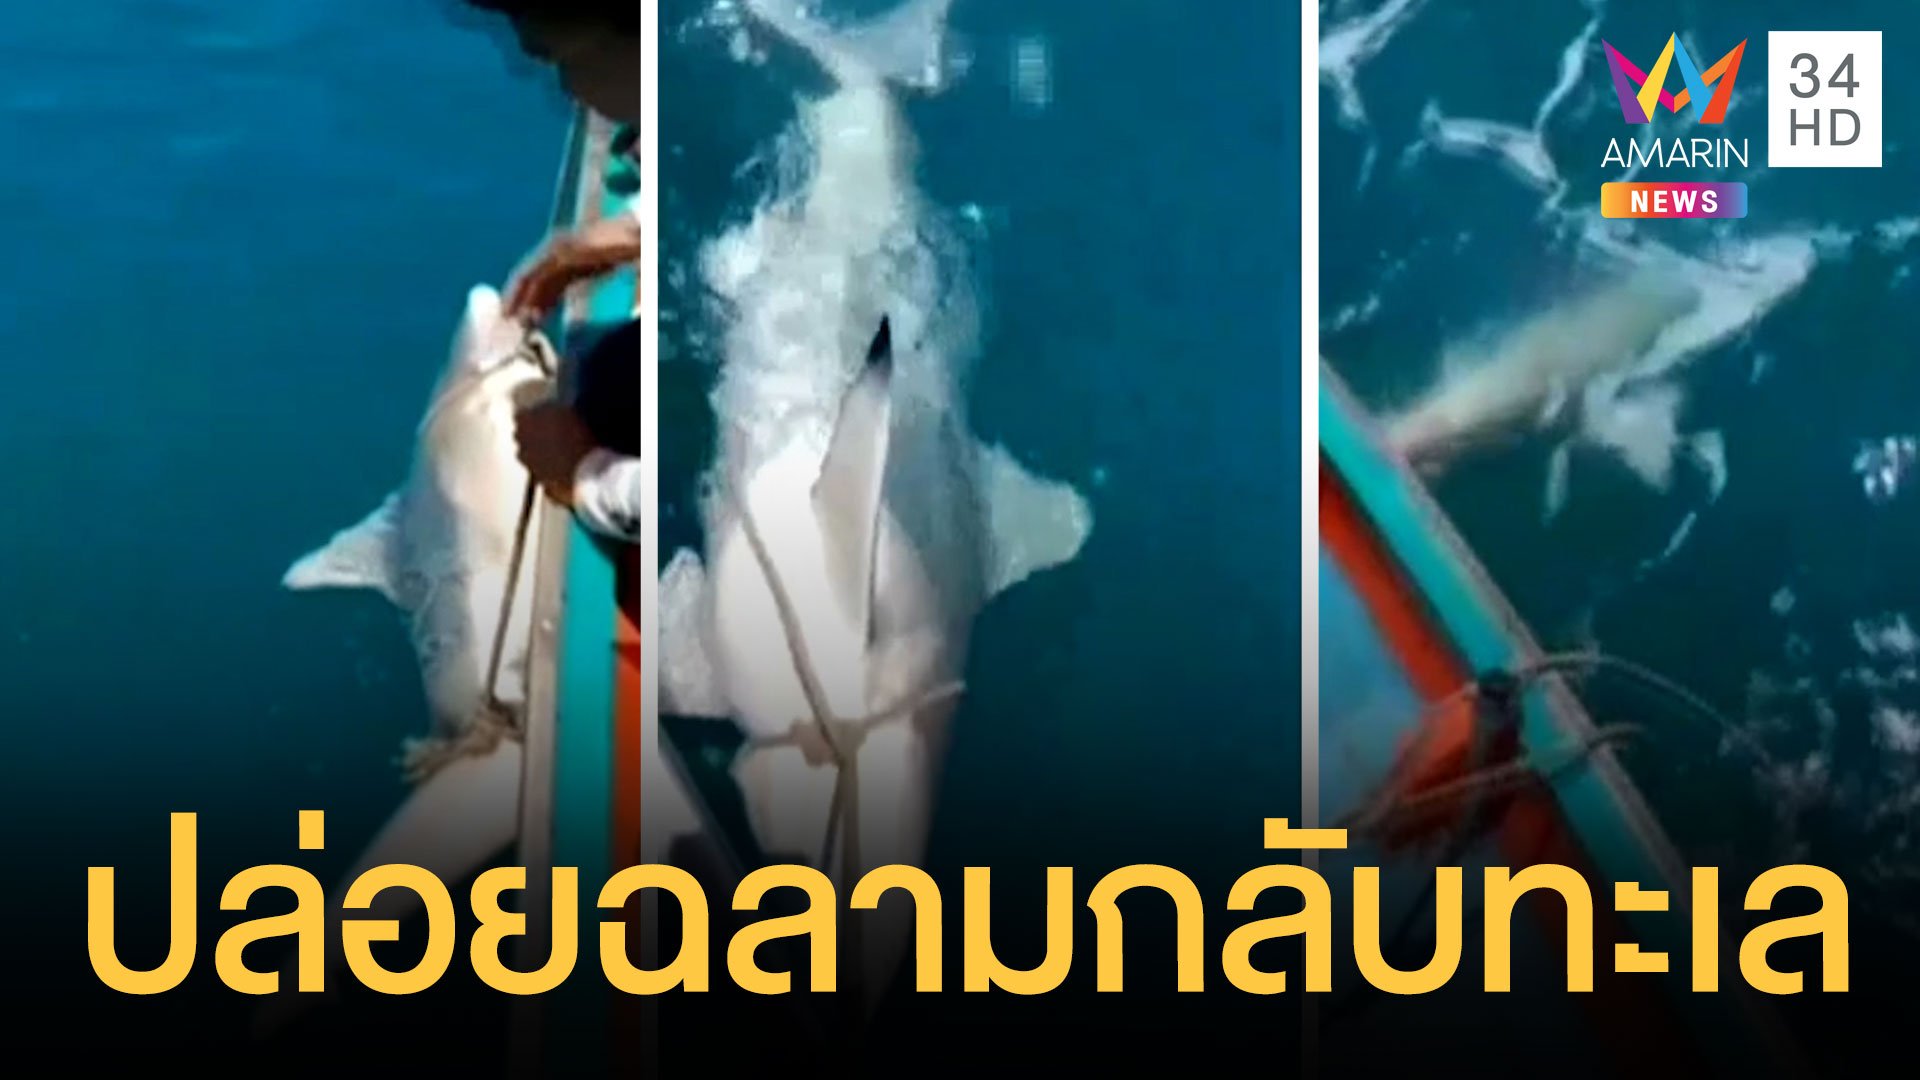 ชาวประมงปล่อยฉลามแม่ลูกอ่อนกลับทะเล | ข่าวอรุณอมรินทร์ | 20 มิ.ย. 64 | AMARIN TVHD34